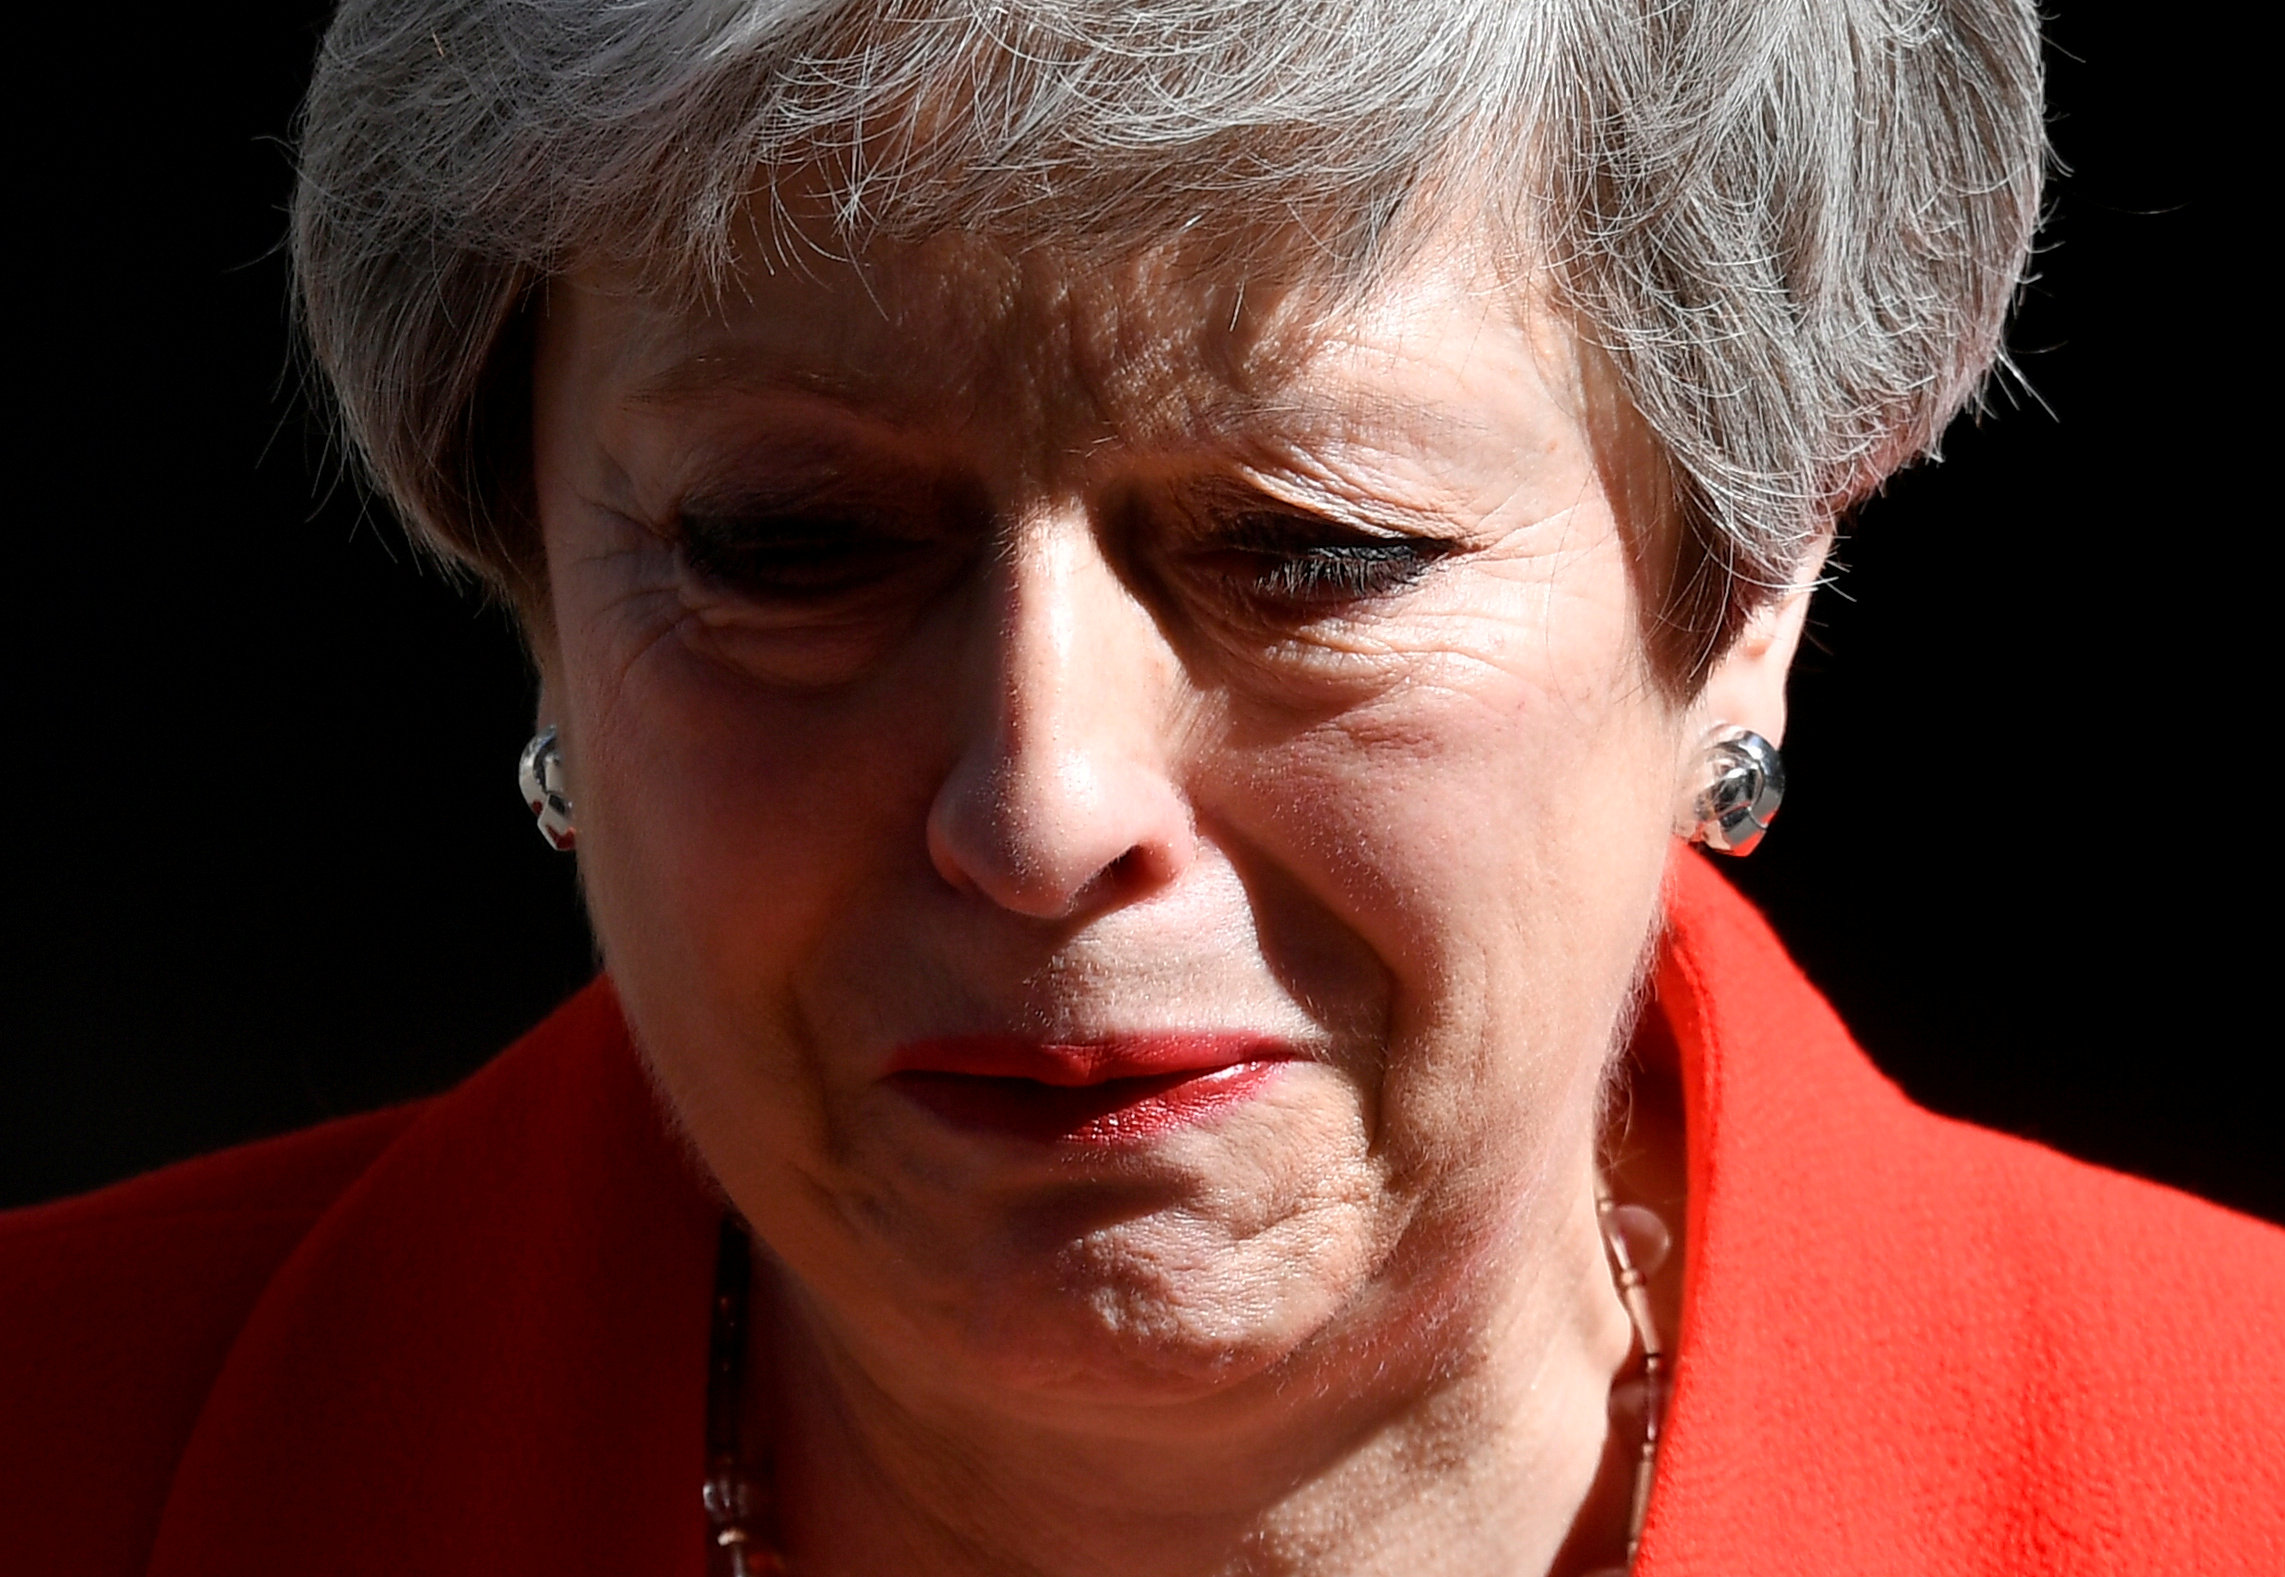 Theresa May rompe en llanto durante su discurso de dimisión (VIDEO)